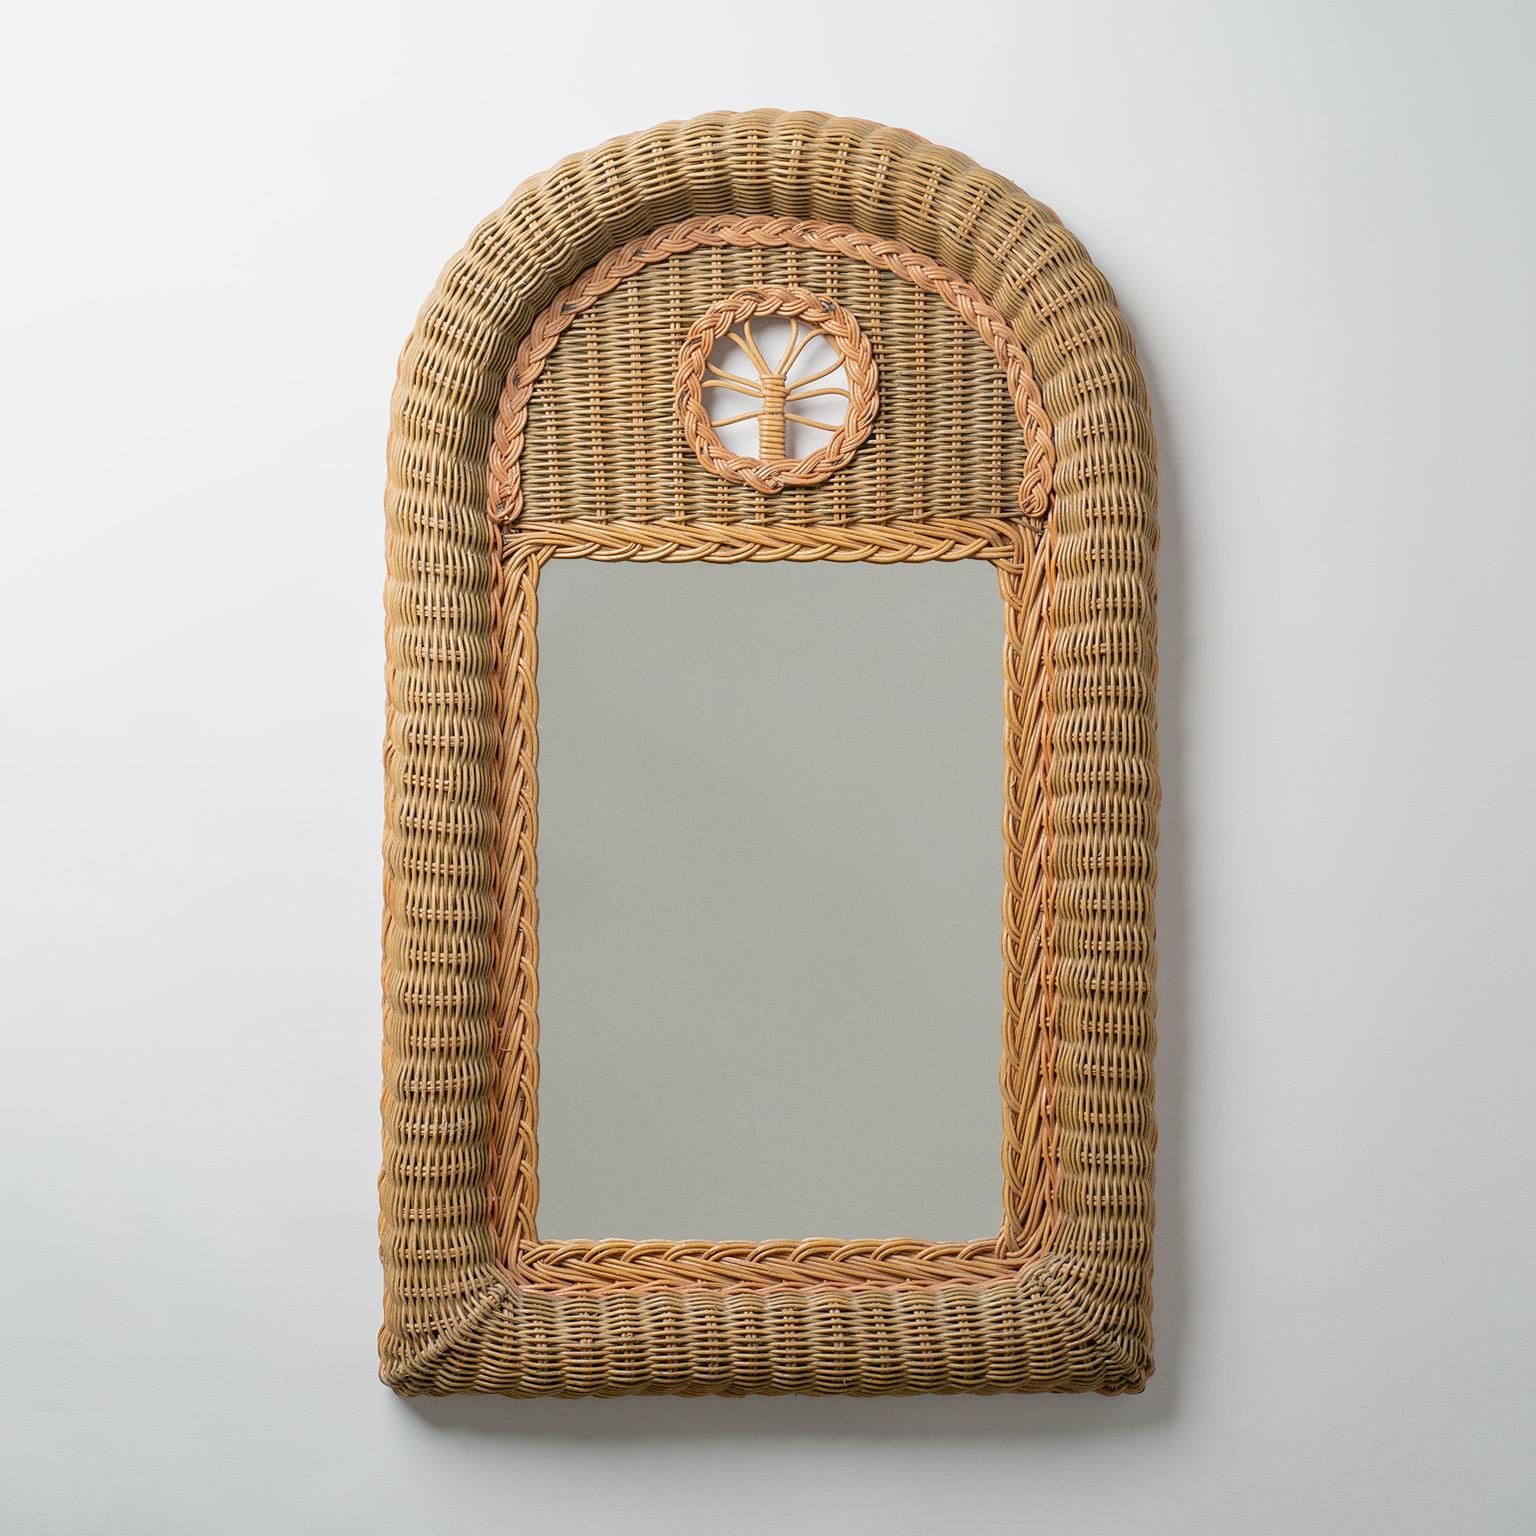 Französischer Rattan-Spiegel aus den 1970er Jahren, handgefertigt. Schöne Folk Art Wiedergabe des klassischen Französisch Trumeau Spiegel in gedämpften erdigen Tönen mit einem charmanten floralen Detail.sehr schönen ursprünglichen Zustand mit